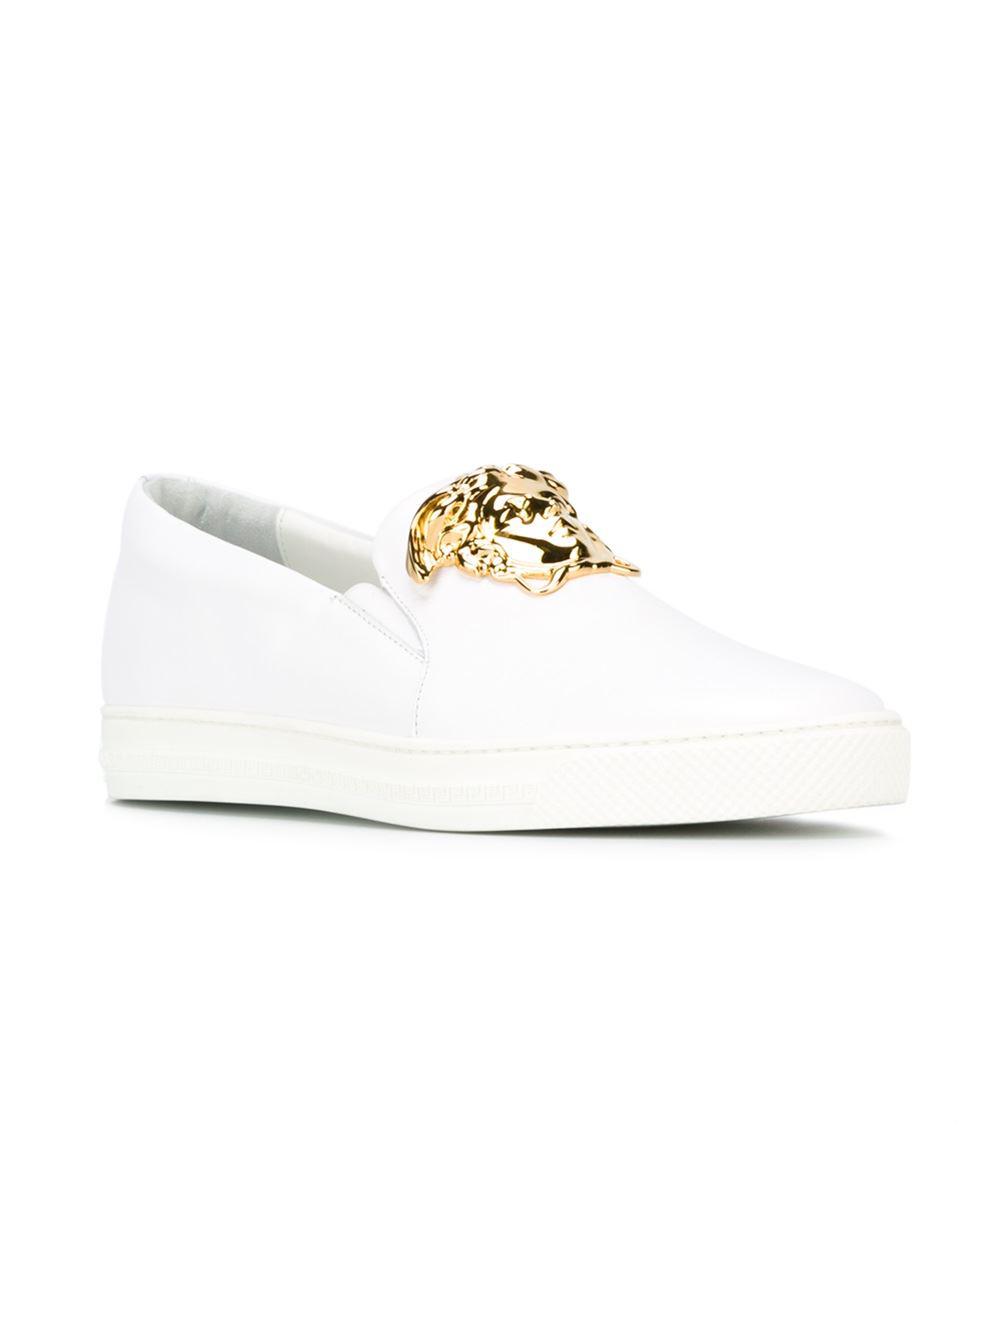 Versace Medusa Slip-on Sneakers in White for Men | Lyst